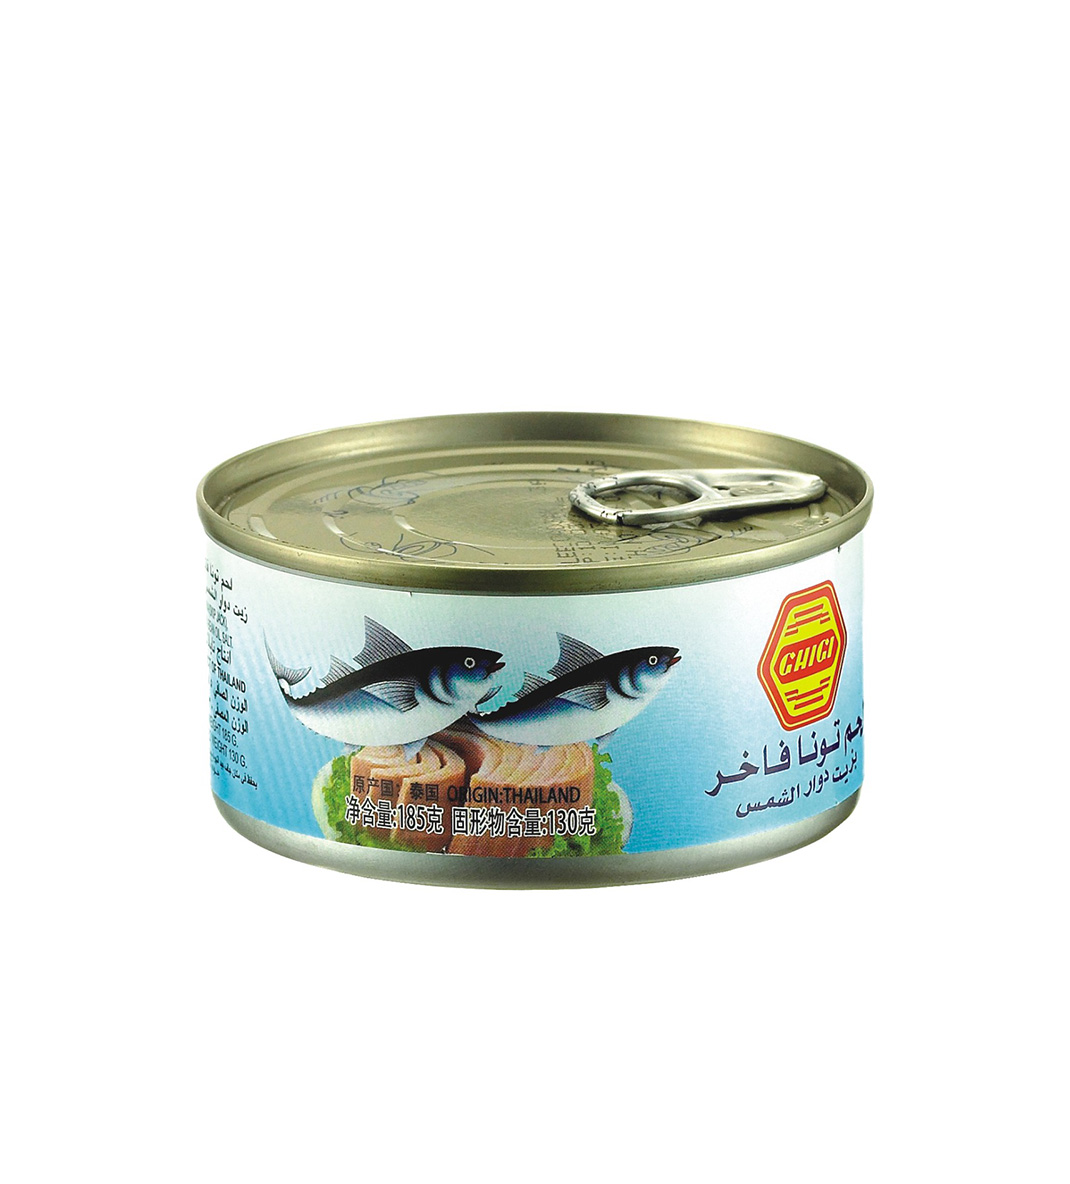 GHIGI White Meat Tuna Chunk in Vegetable Oil 